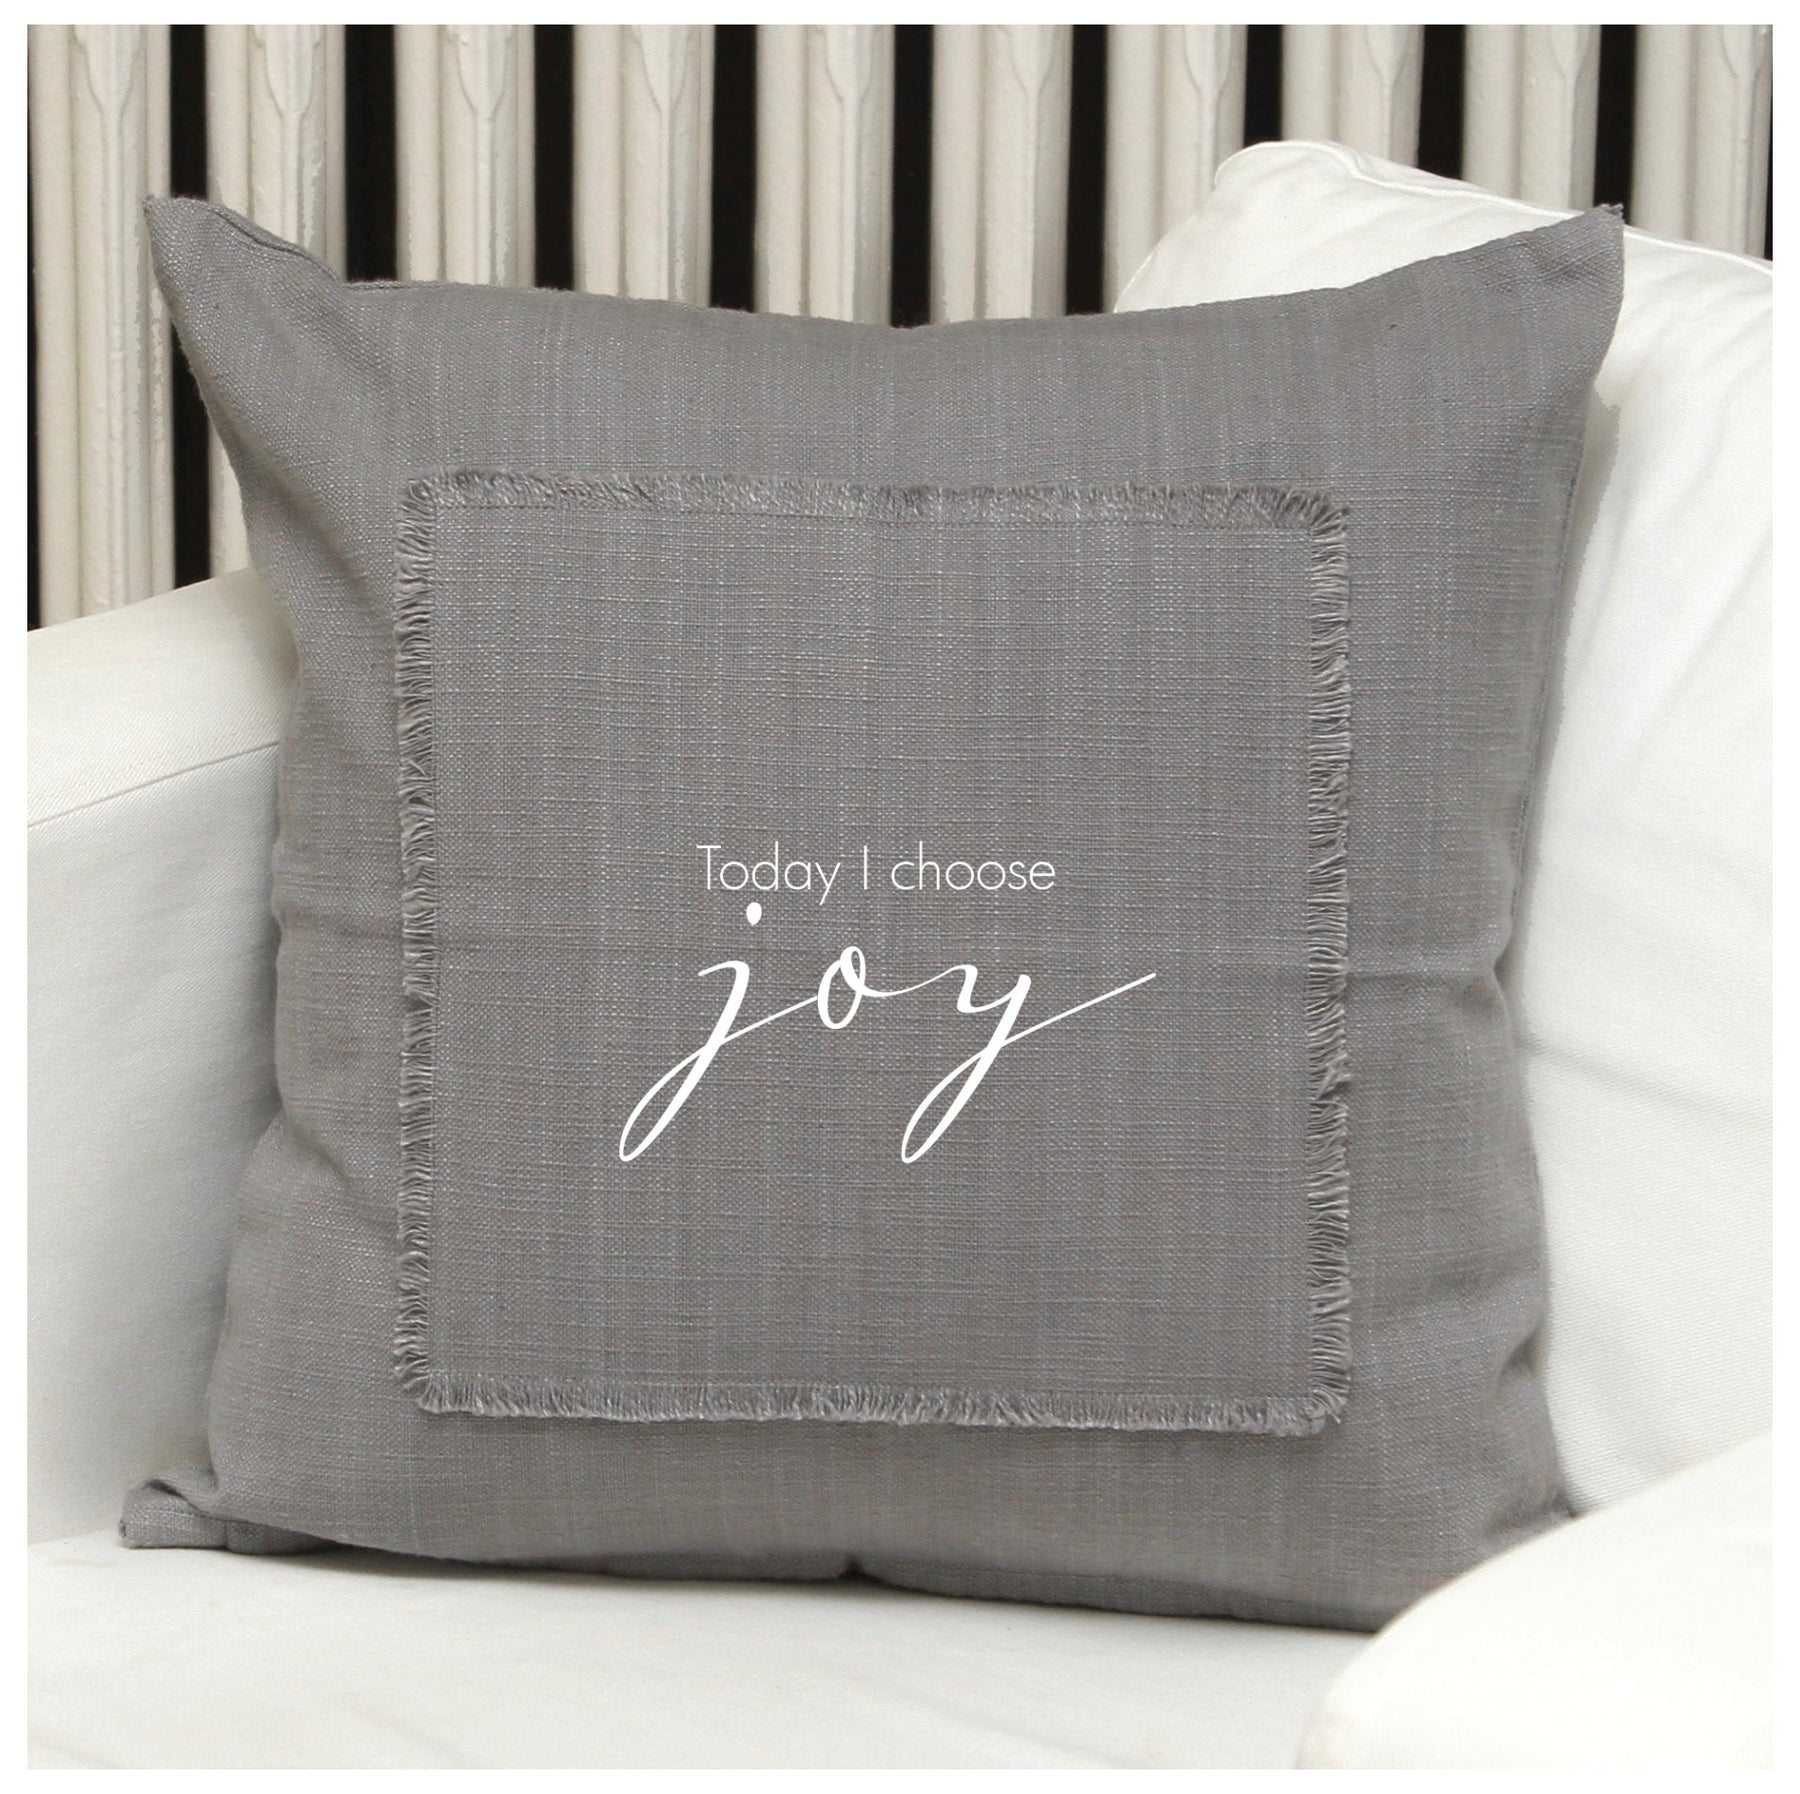 Today I choose joy Pillow